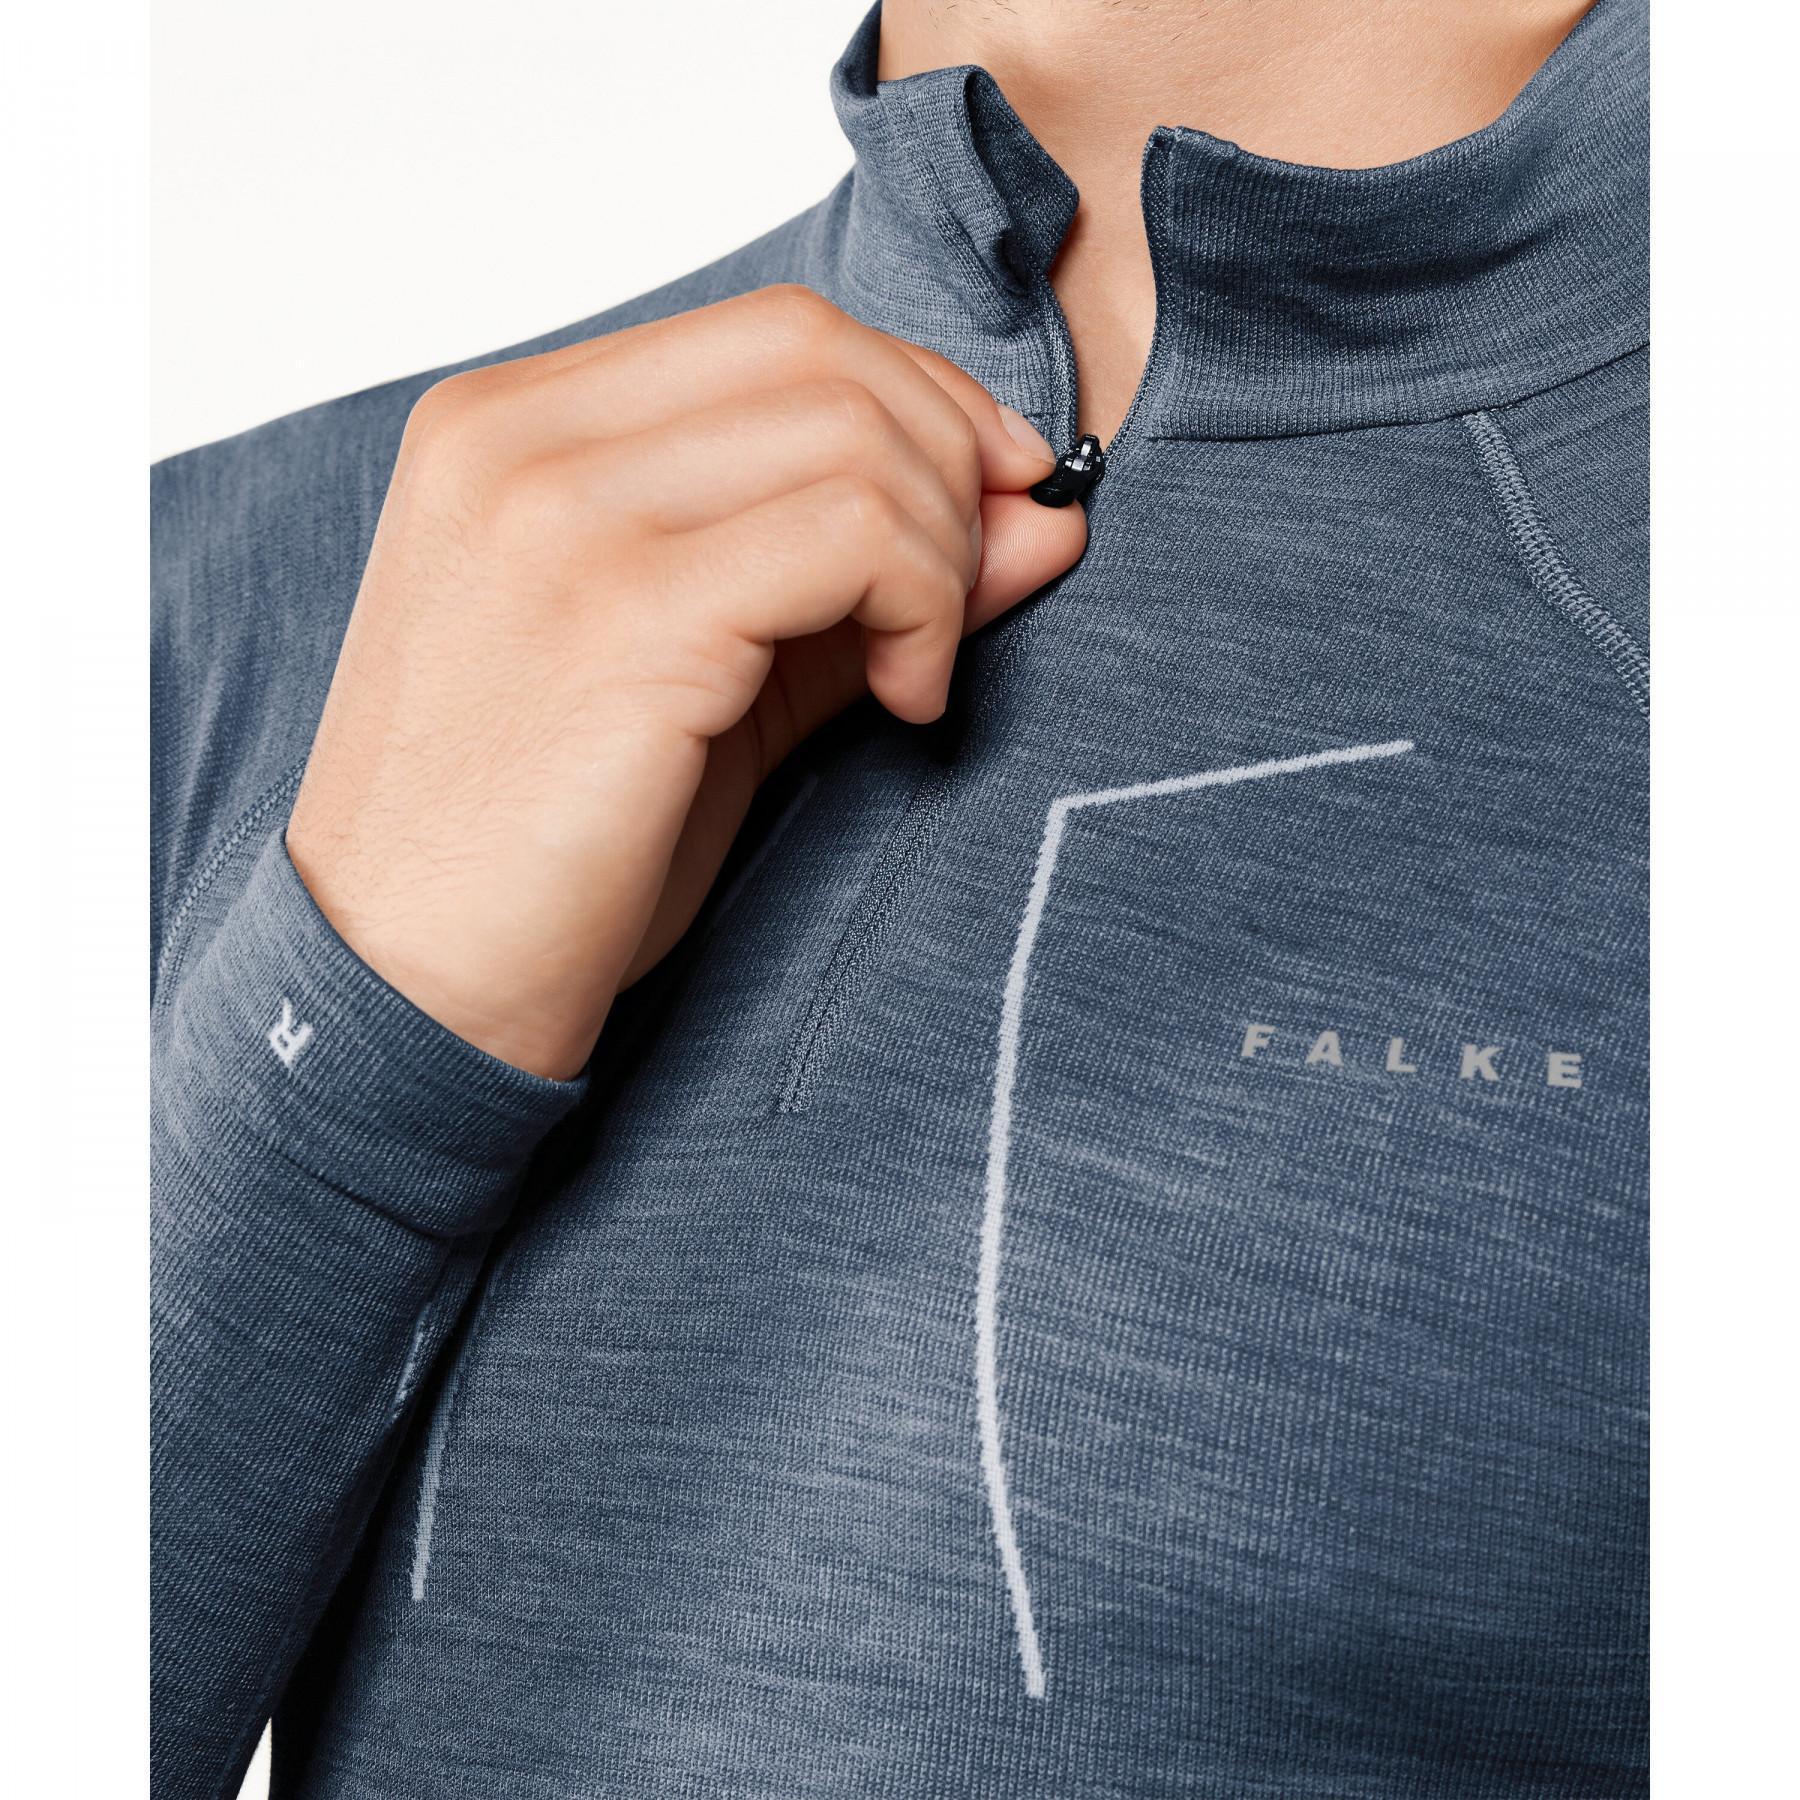 Camiseta mangas largas Falke Wool-Tech